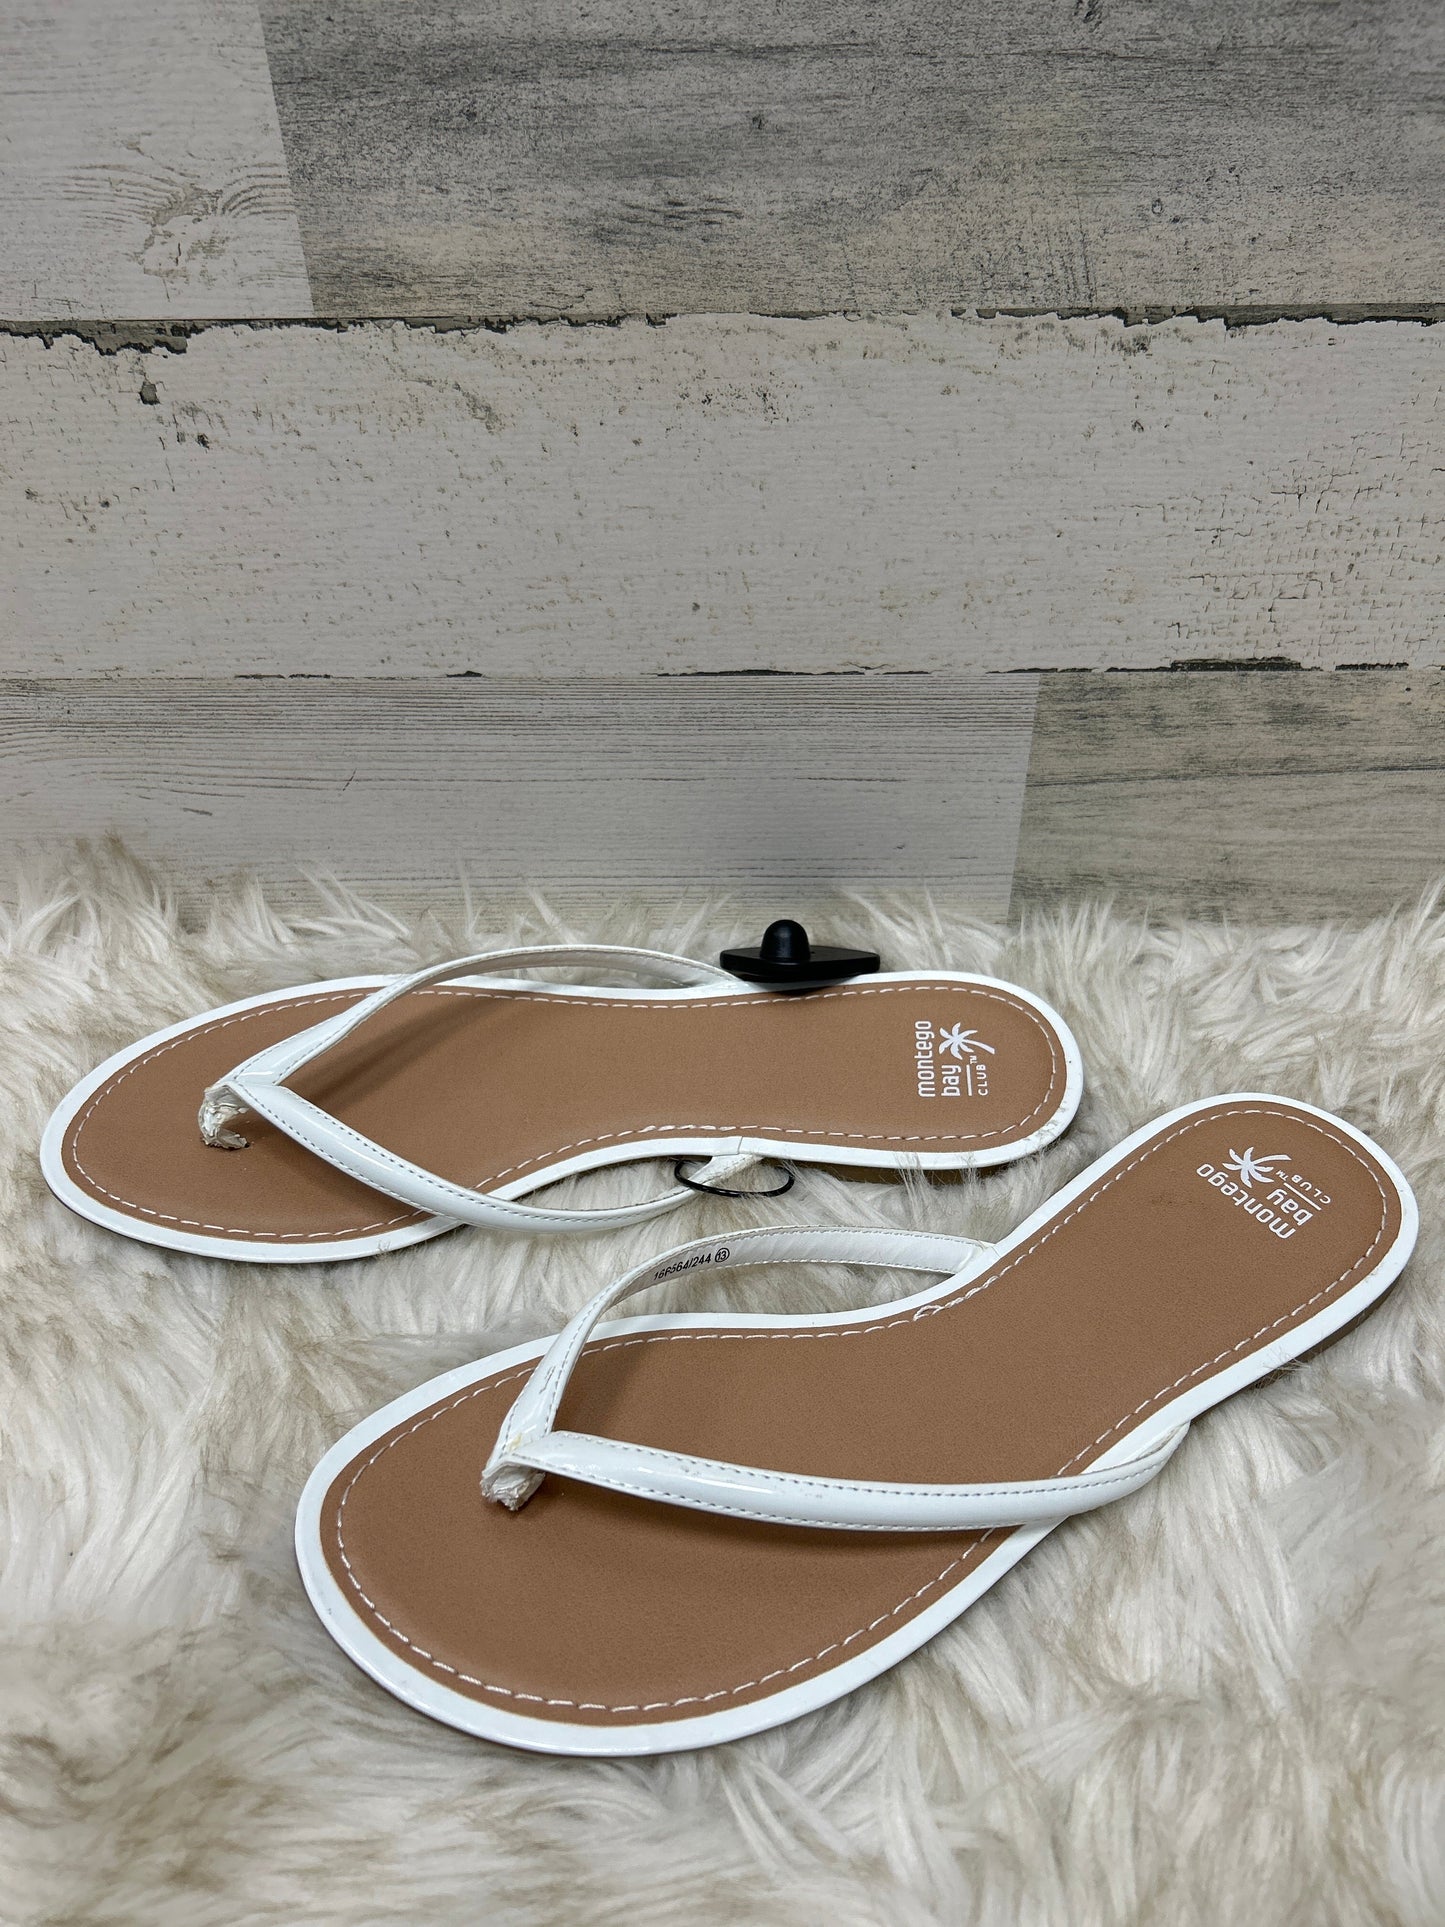 Sandals Flip Flops By Montego Bay  Size: 13